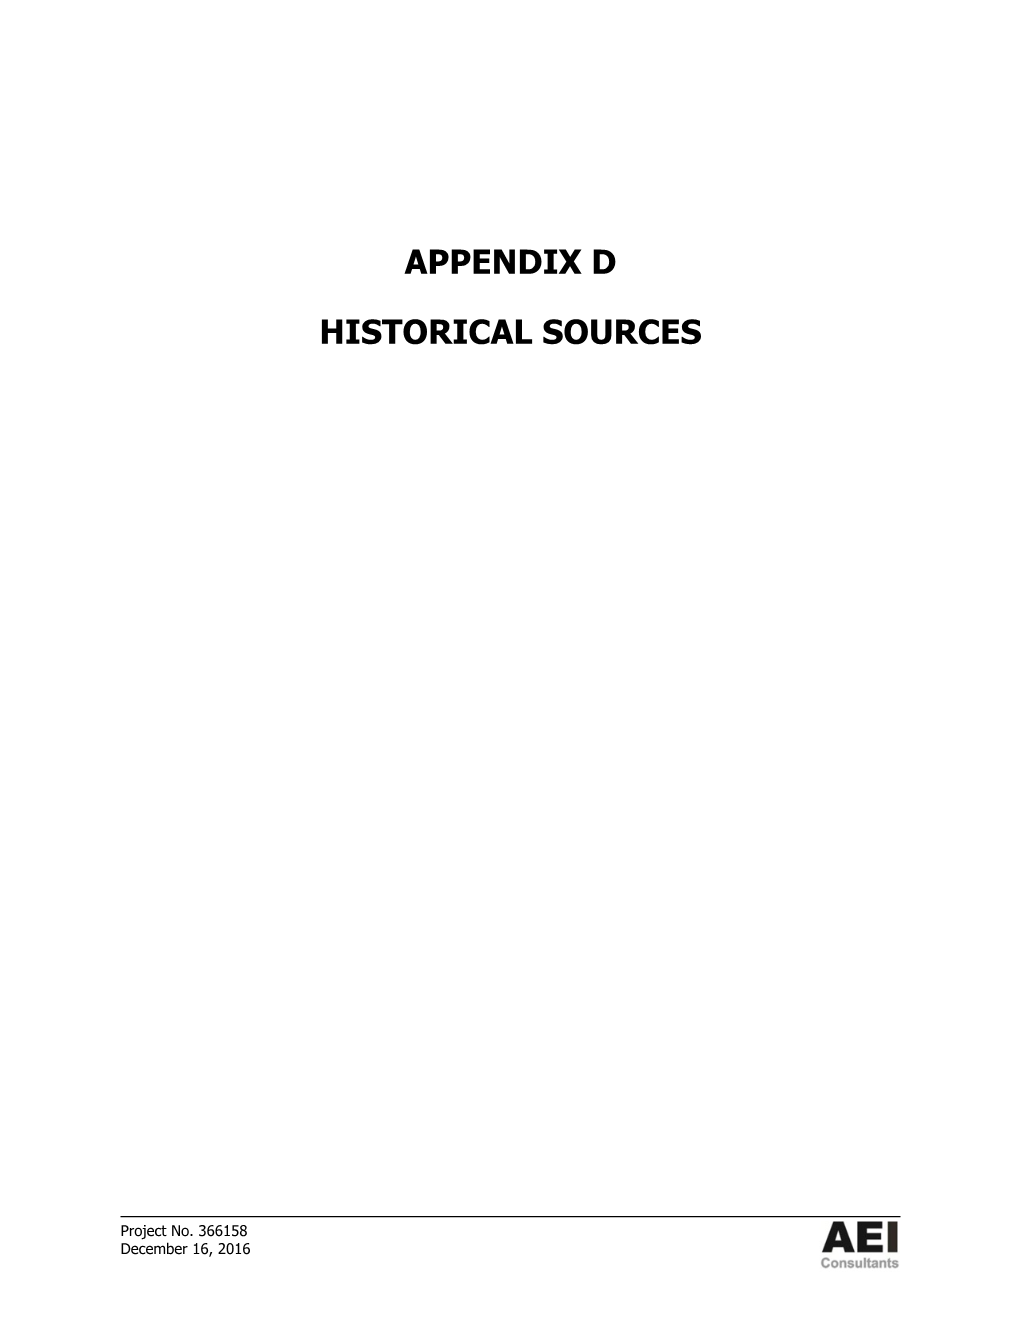 Appendix D Historical Sources